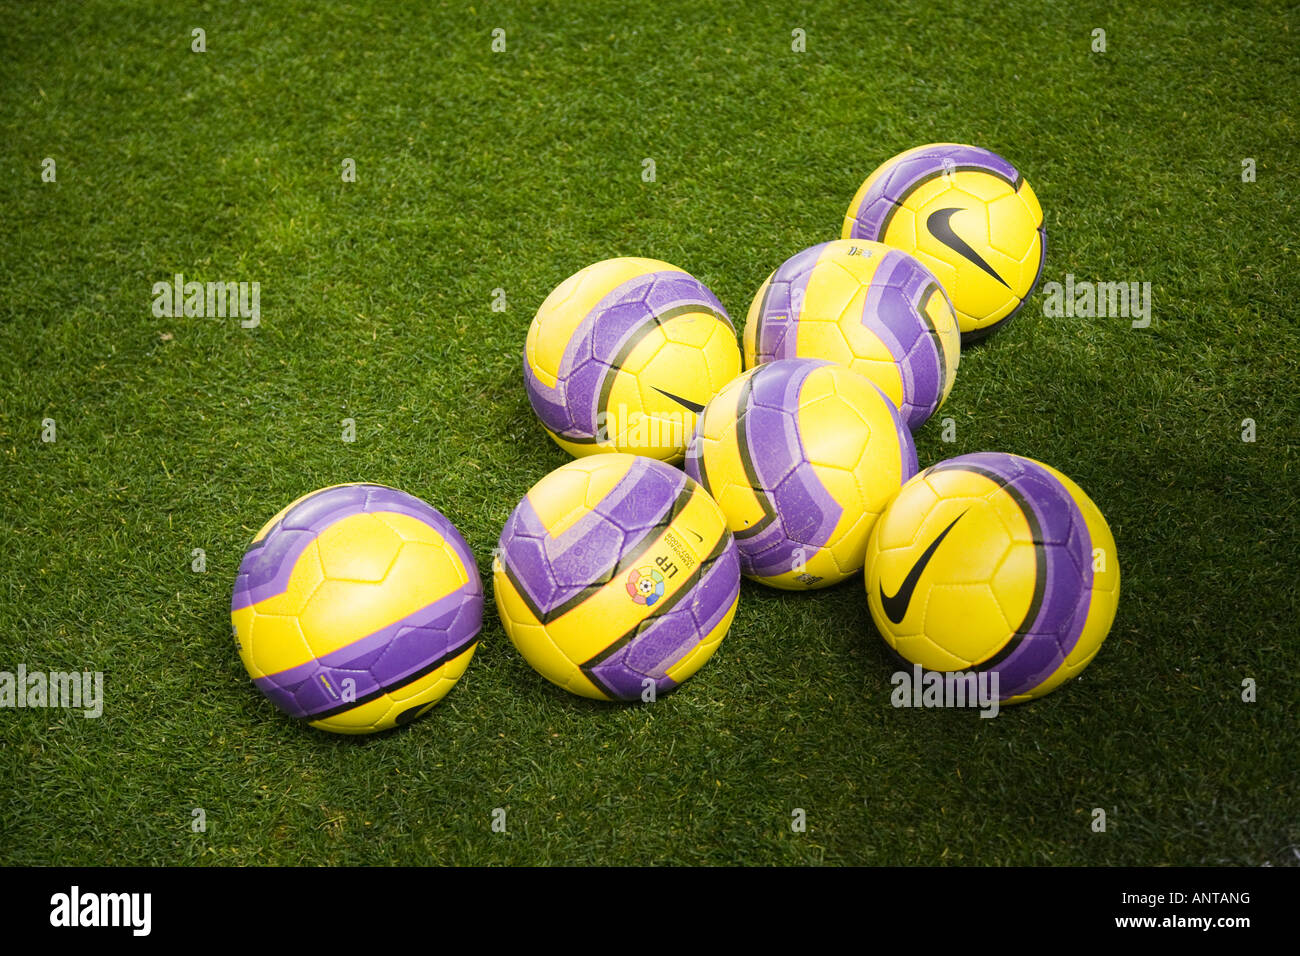 Imagen icónica de balones de fútbol en un terreno de juego, mostrando el  logo de la Liga Española (LFP Fotografía de stock - Alamy